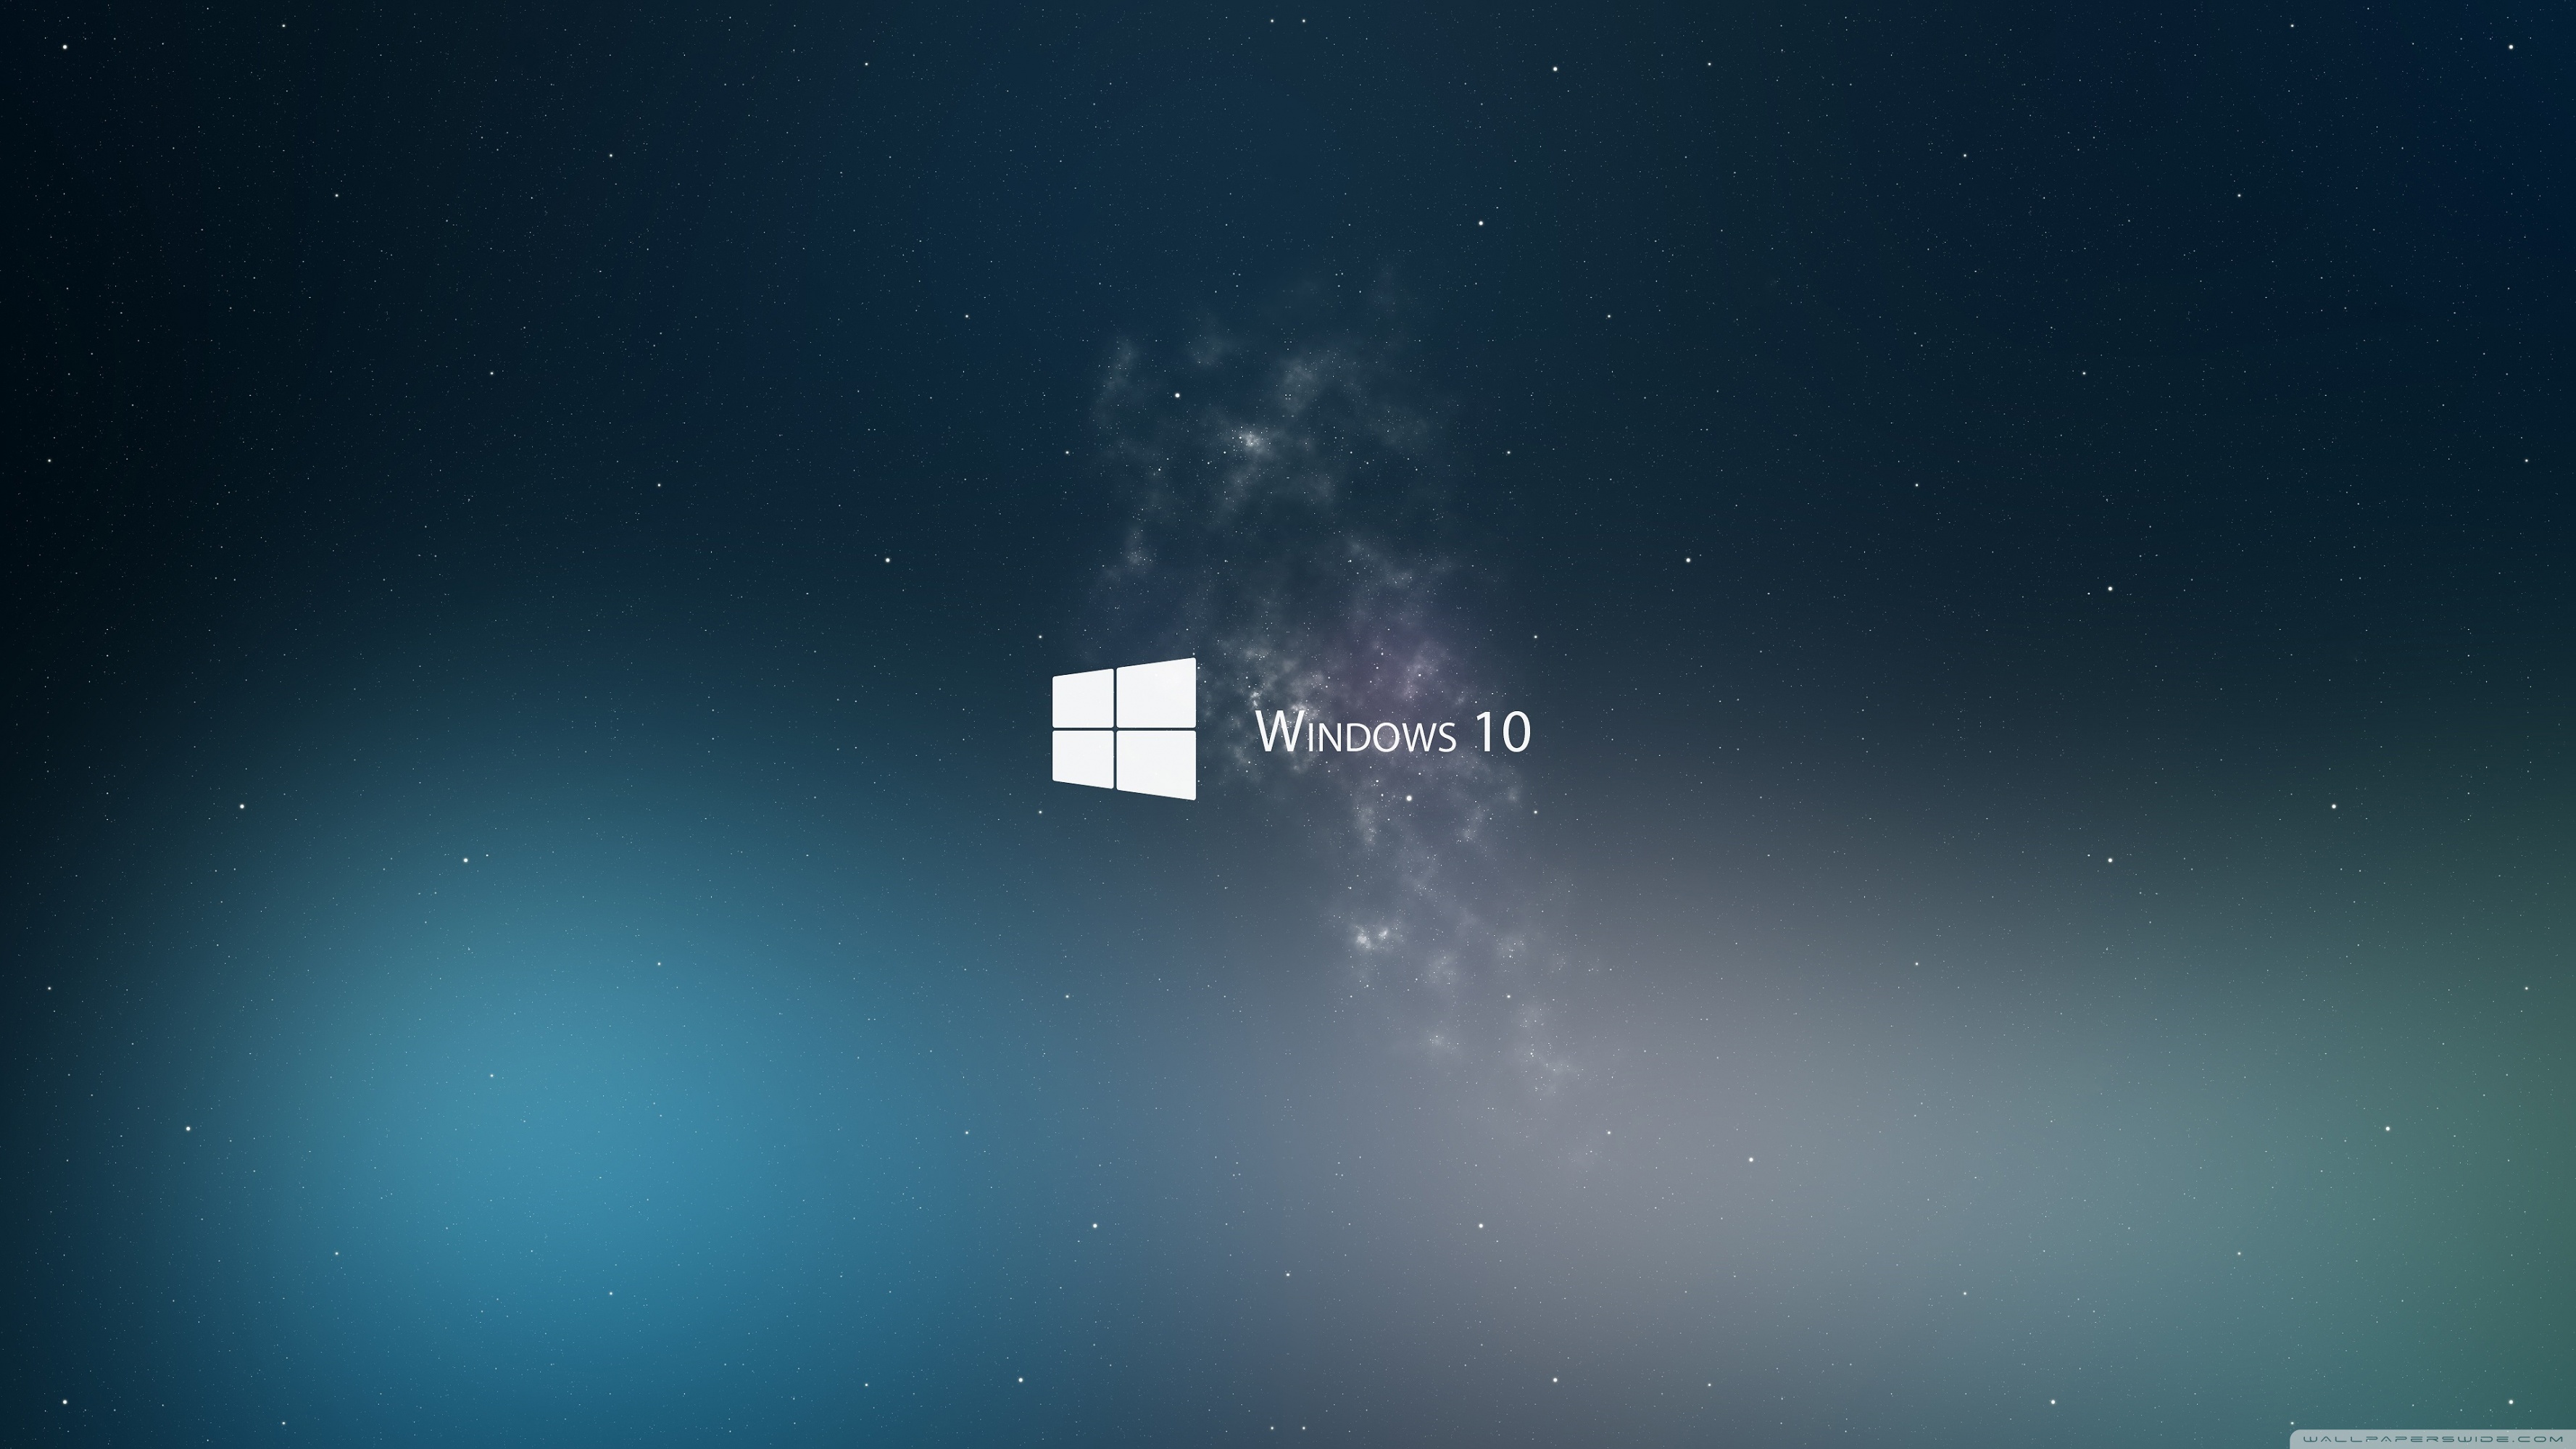 Download Windows 10 Hd Wallpaper For 2560 X Windows 10 Wallpaper Stars 2560x1440 Wallpaper Teahub Io